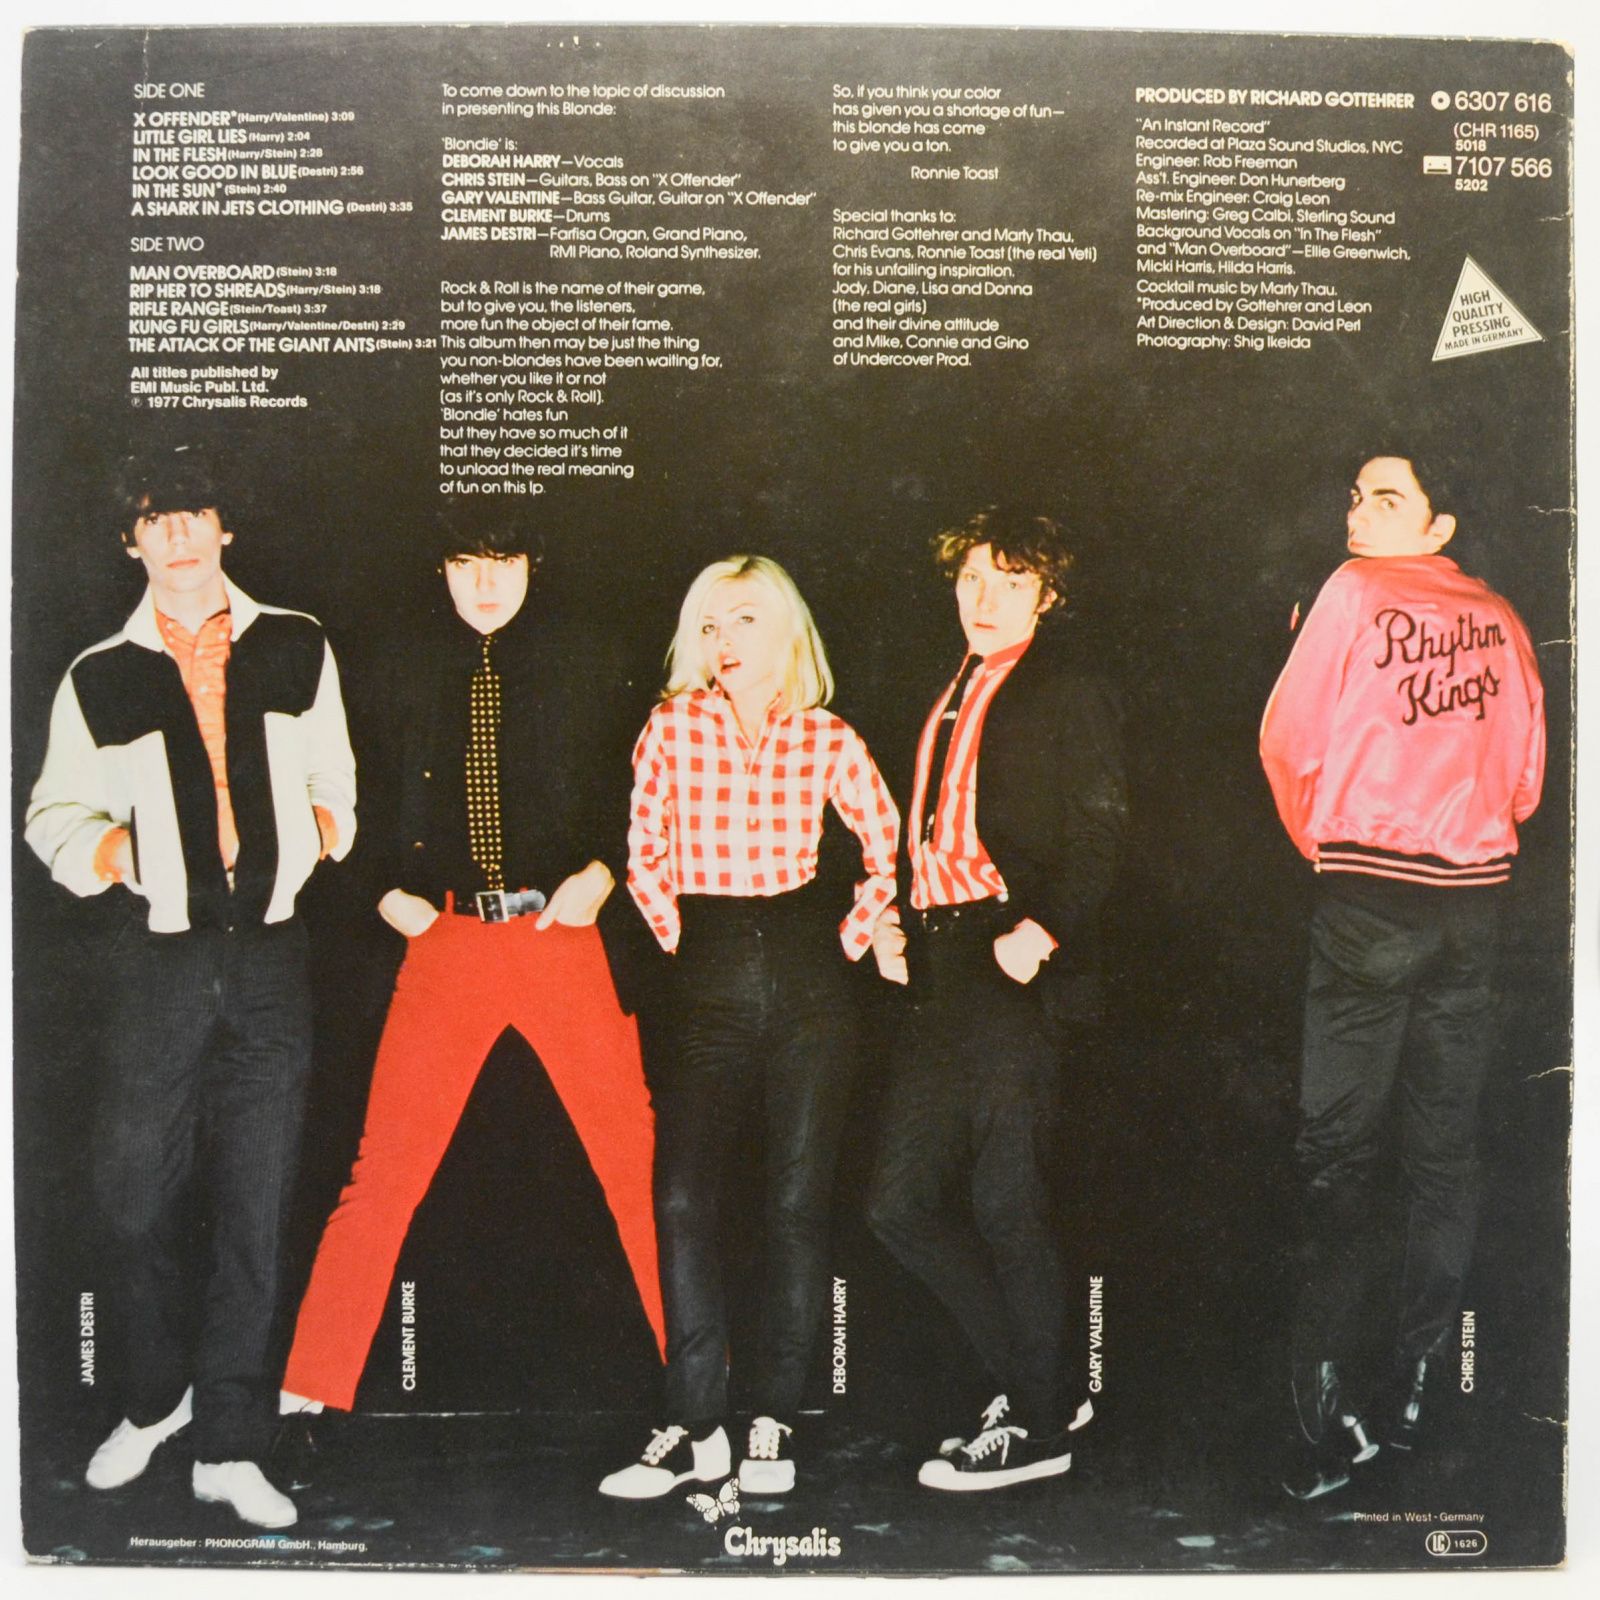 Blondie — Blondie, 1977